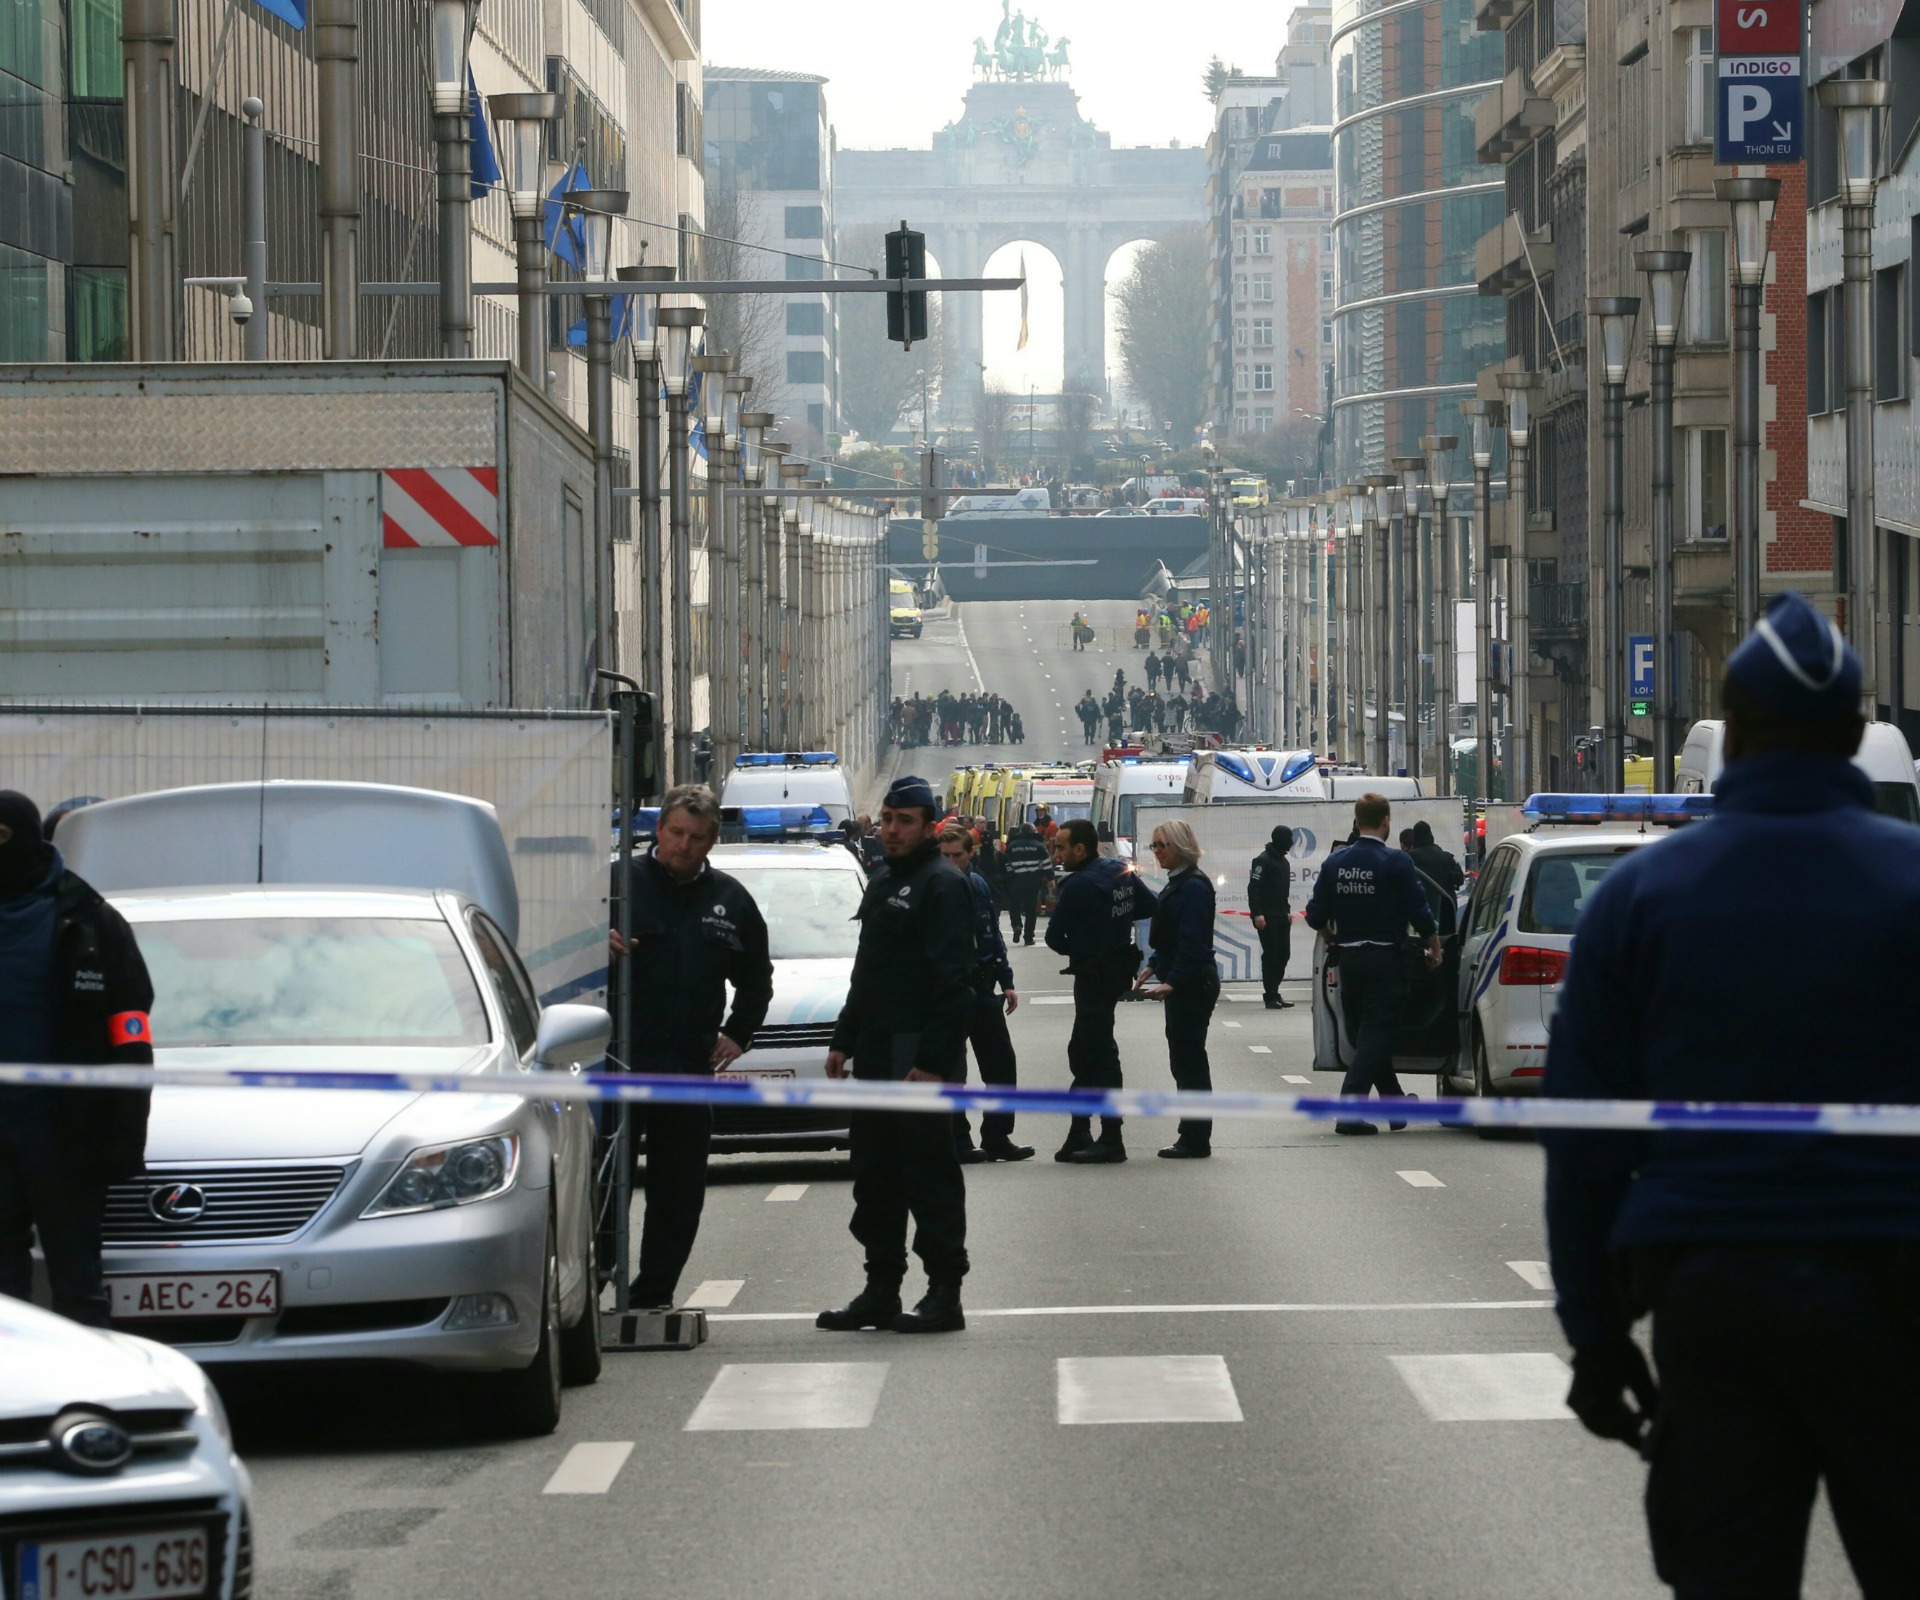 Dozens feared dead in Brussels explosions